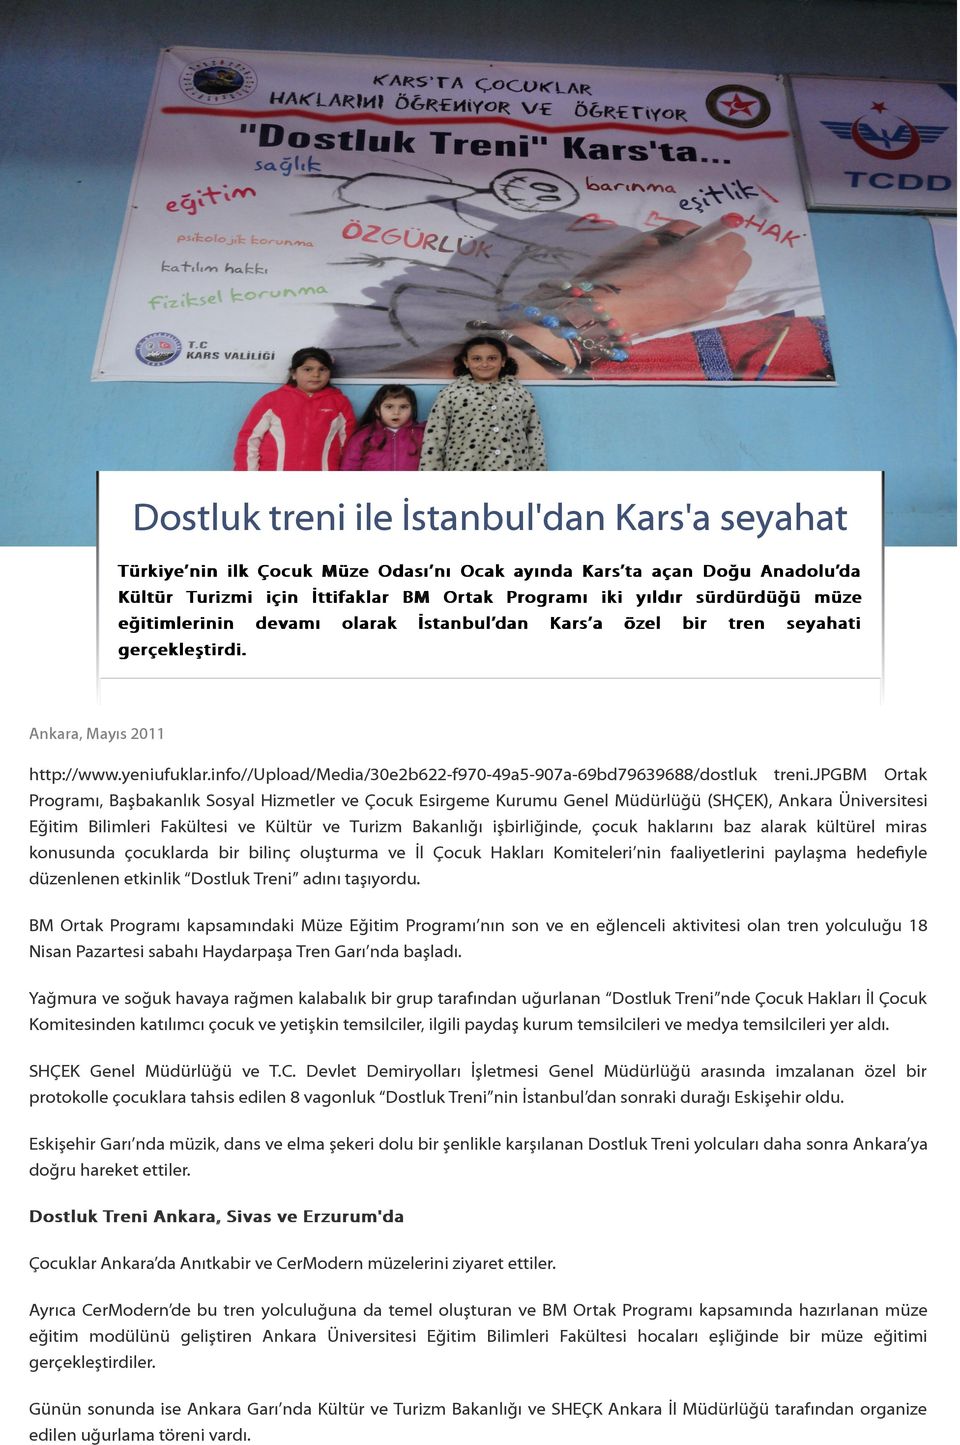 jpgbm Ortak Programı, Başbakanlık Sosyal Hizmetler ve Çocuk Esirgeme Kurumu Genel Müdürlüğü (SHÇEK), Ankara Üniversitesi Eğitim Bilimleri Fakültesi ve Kültür ve Turizm Bakanlığı işbirliğinde, çocuk